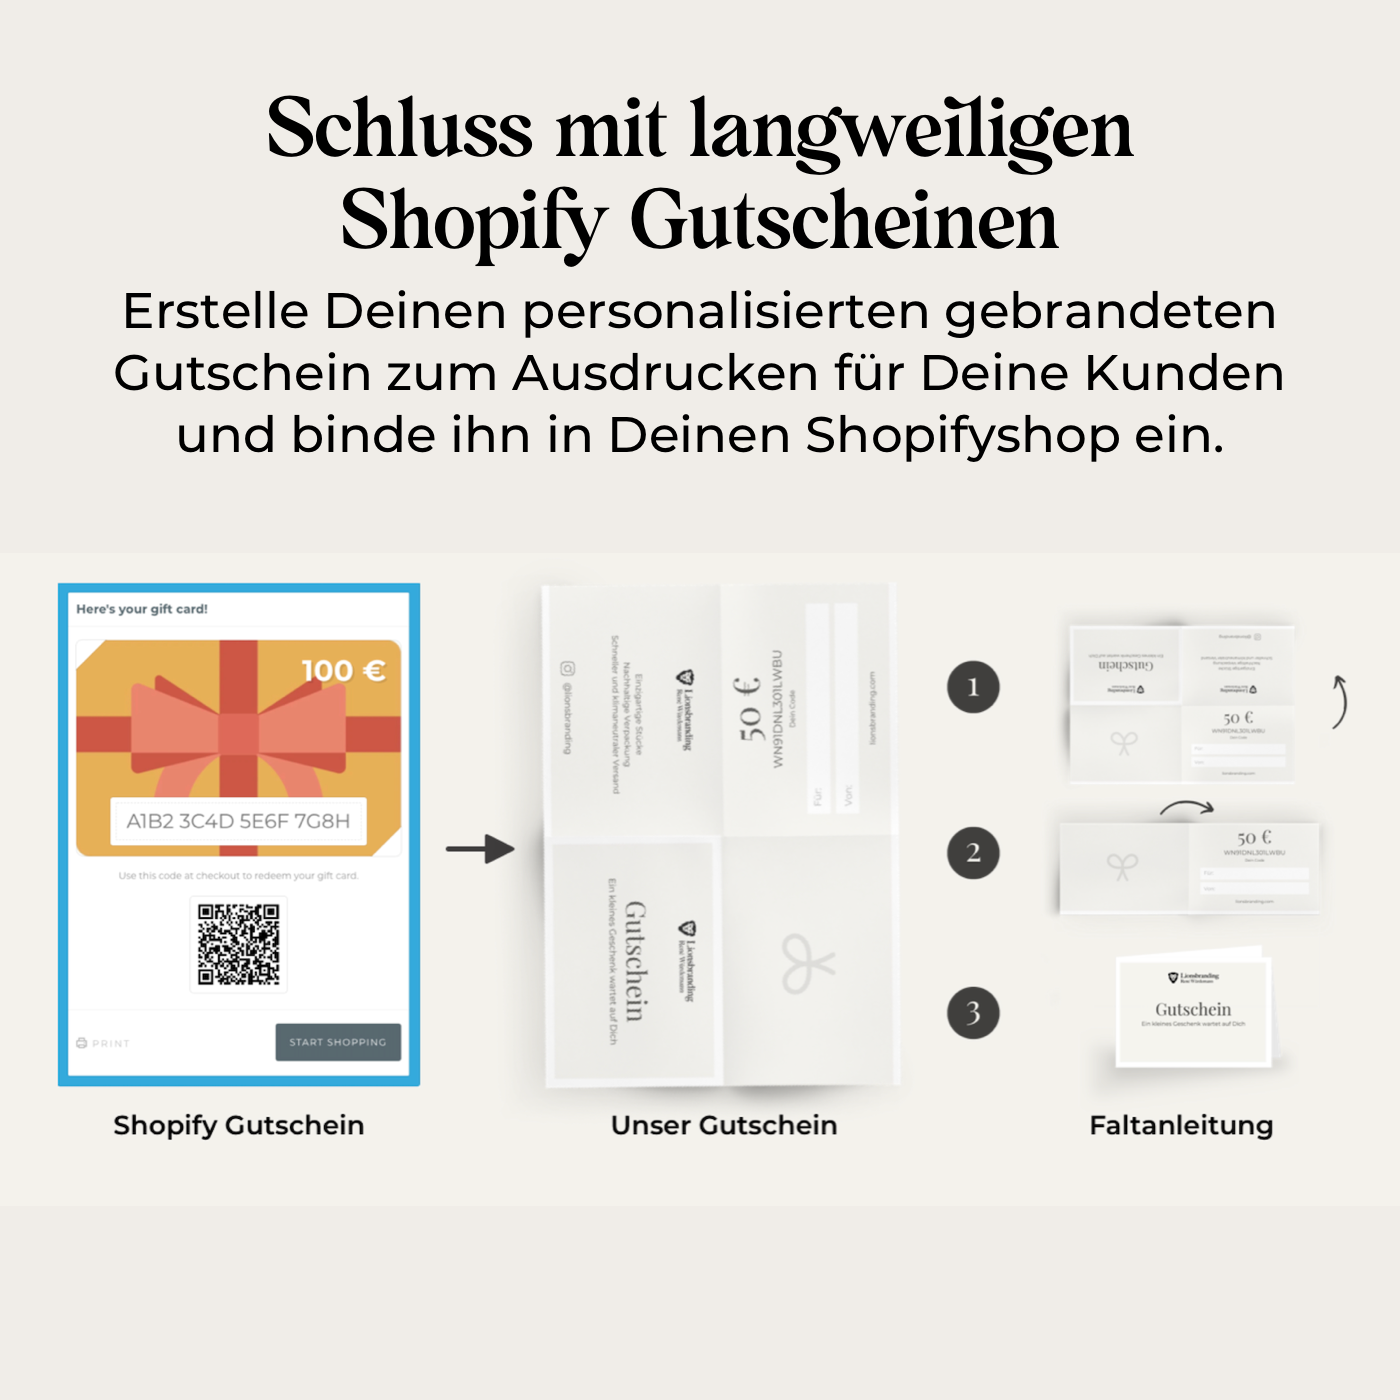 Shopify Gutschein Template